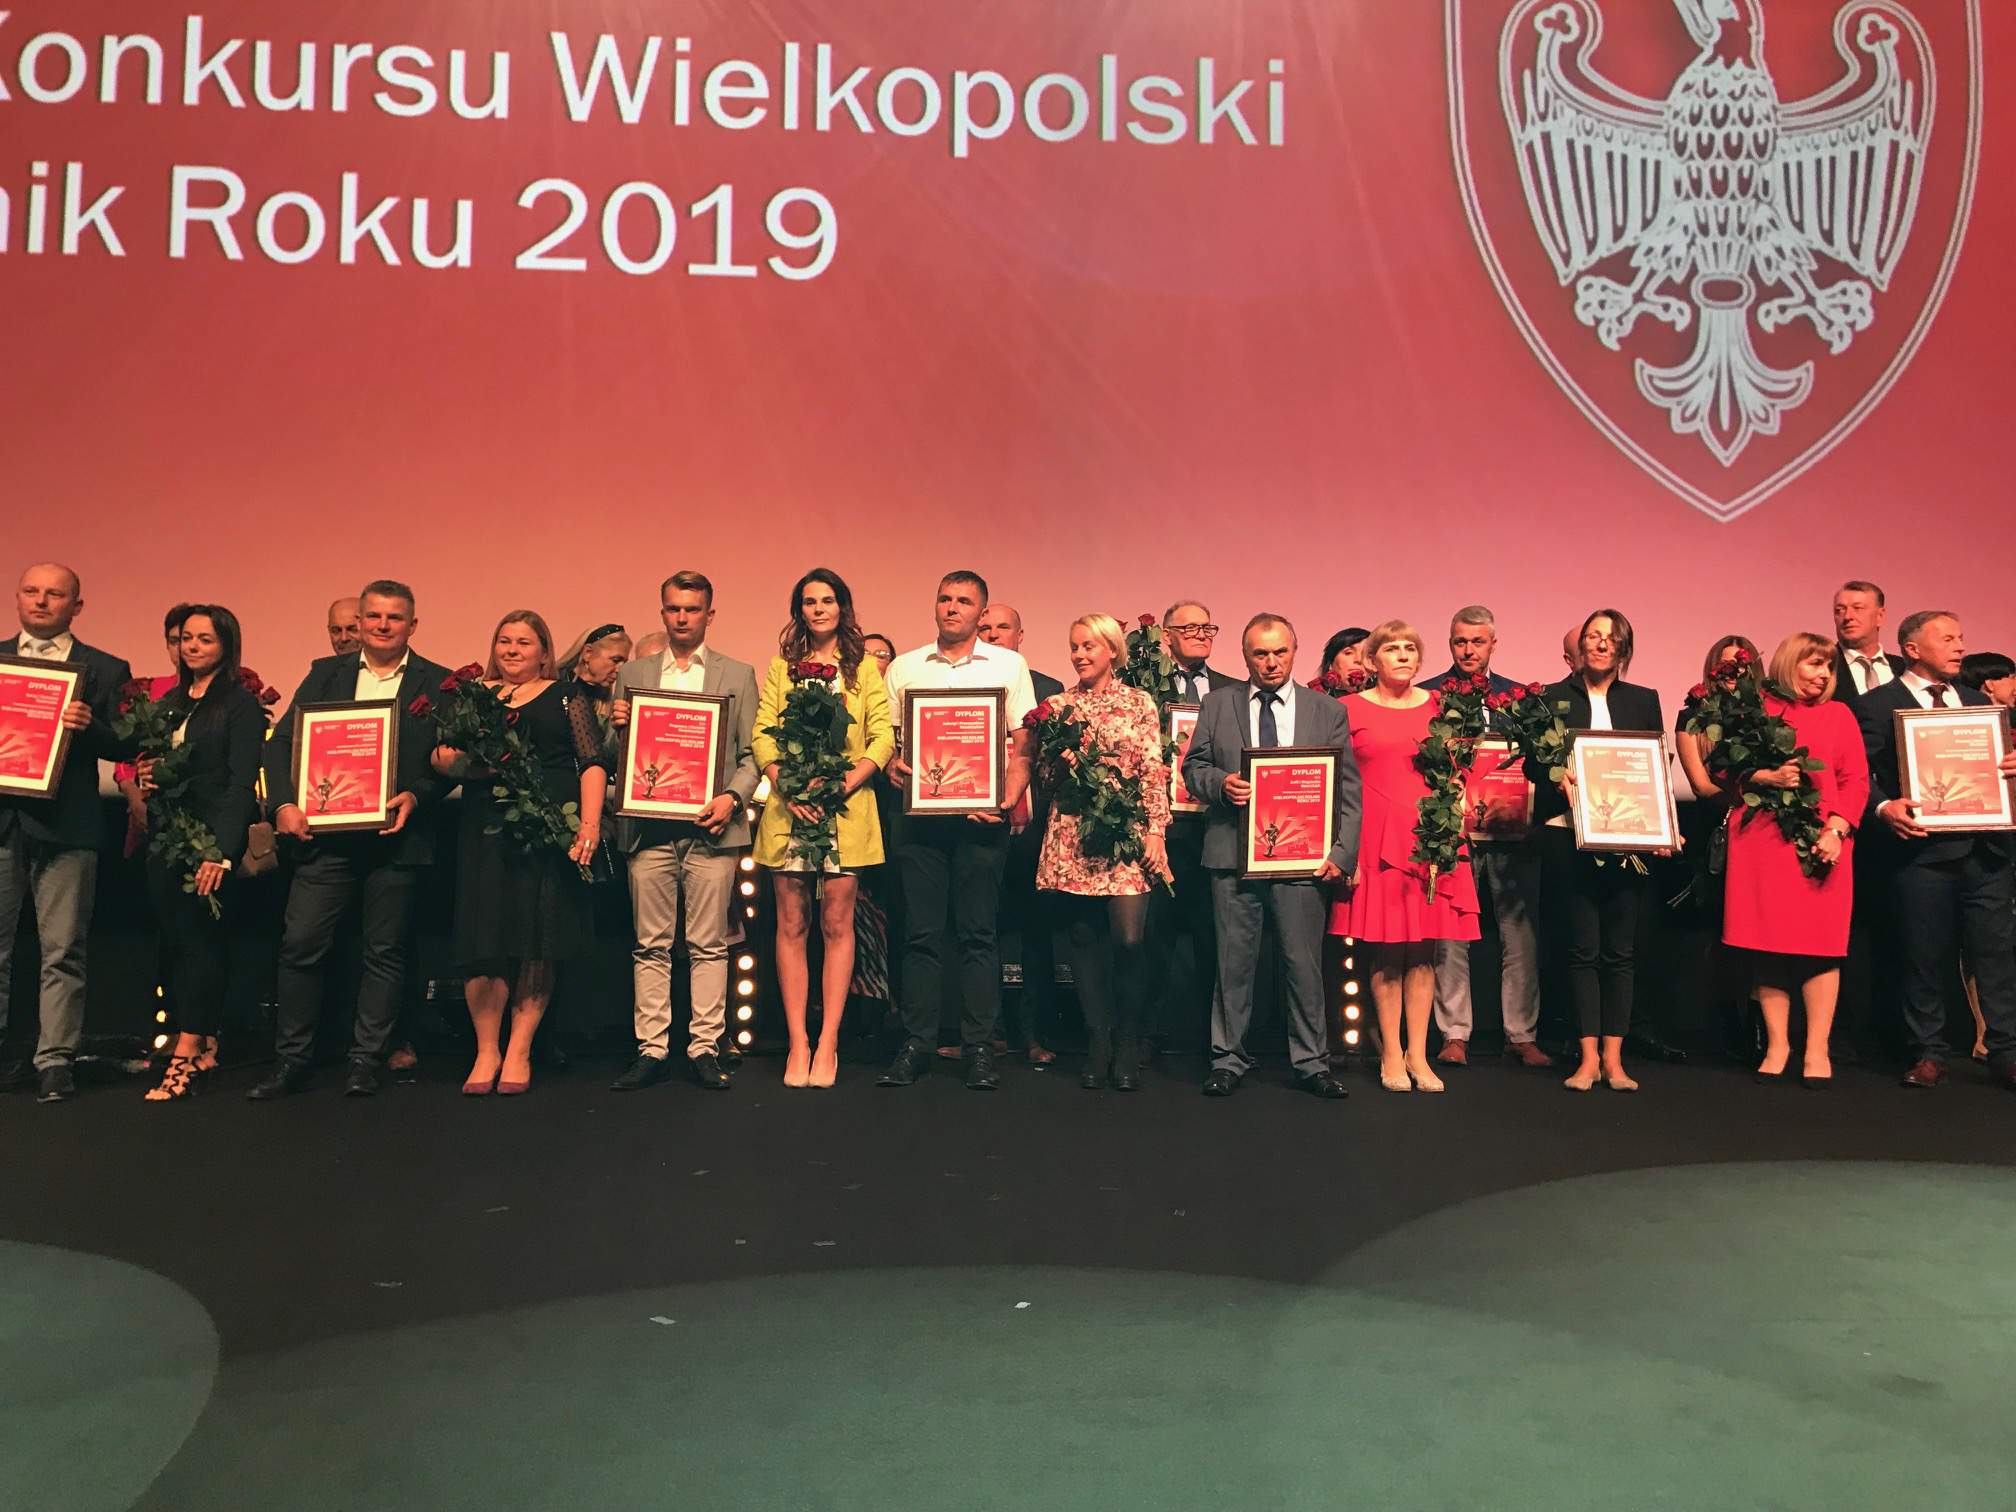 Nominowani do XIX edycji Konkursu Wielkopolski Rolnik Roku 2019.